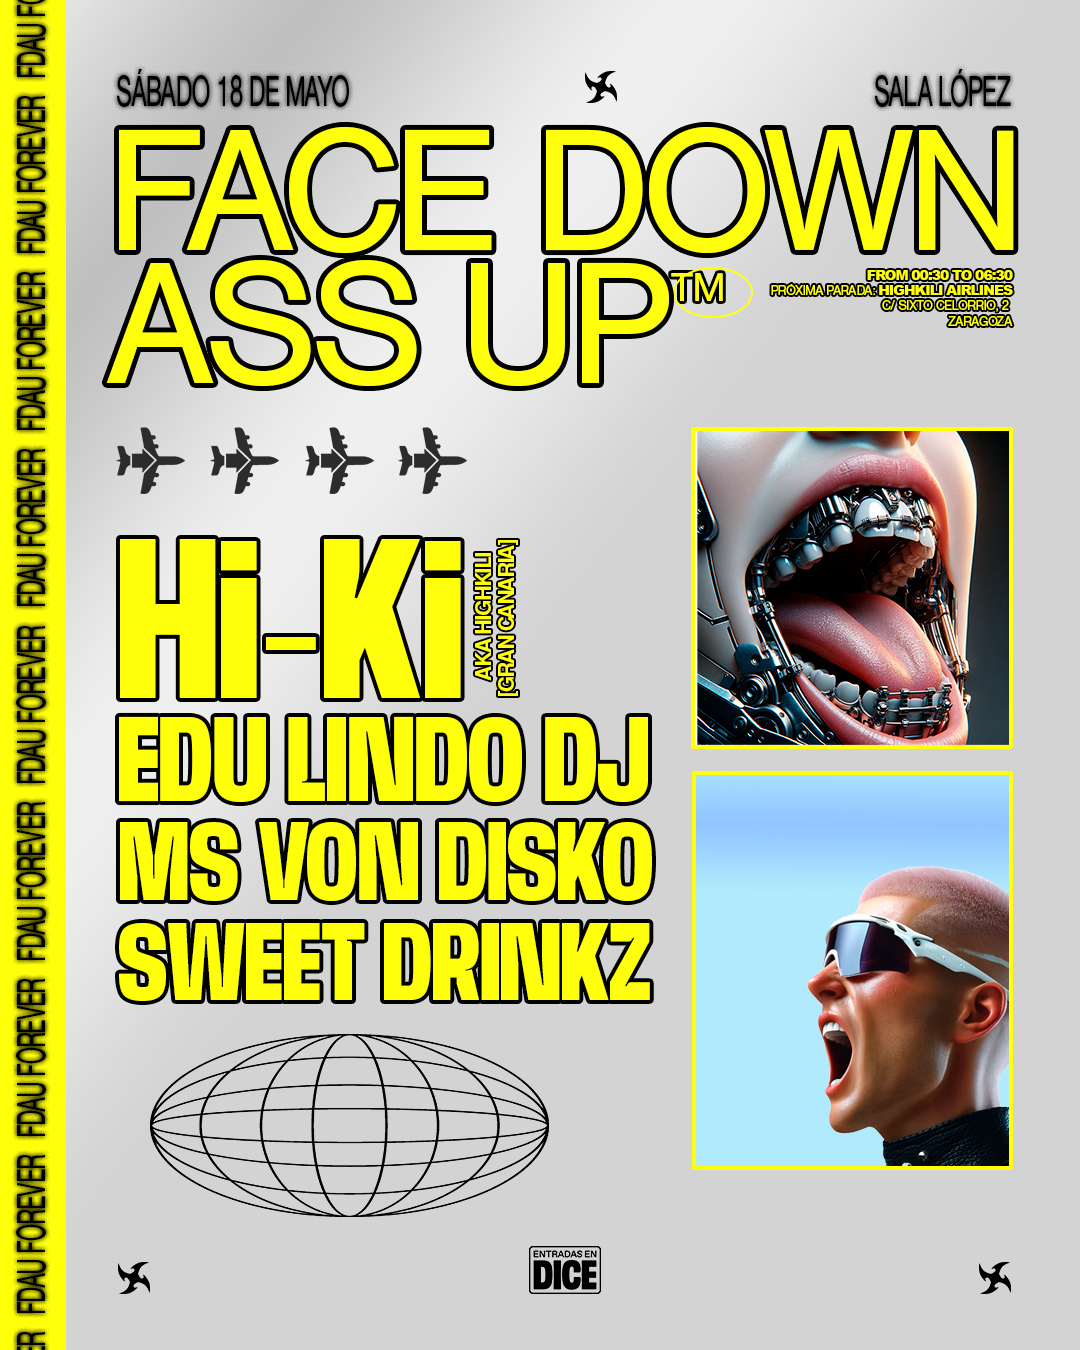 Face Down Ass Up - Página frontal